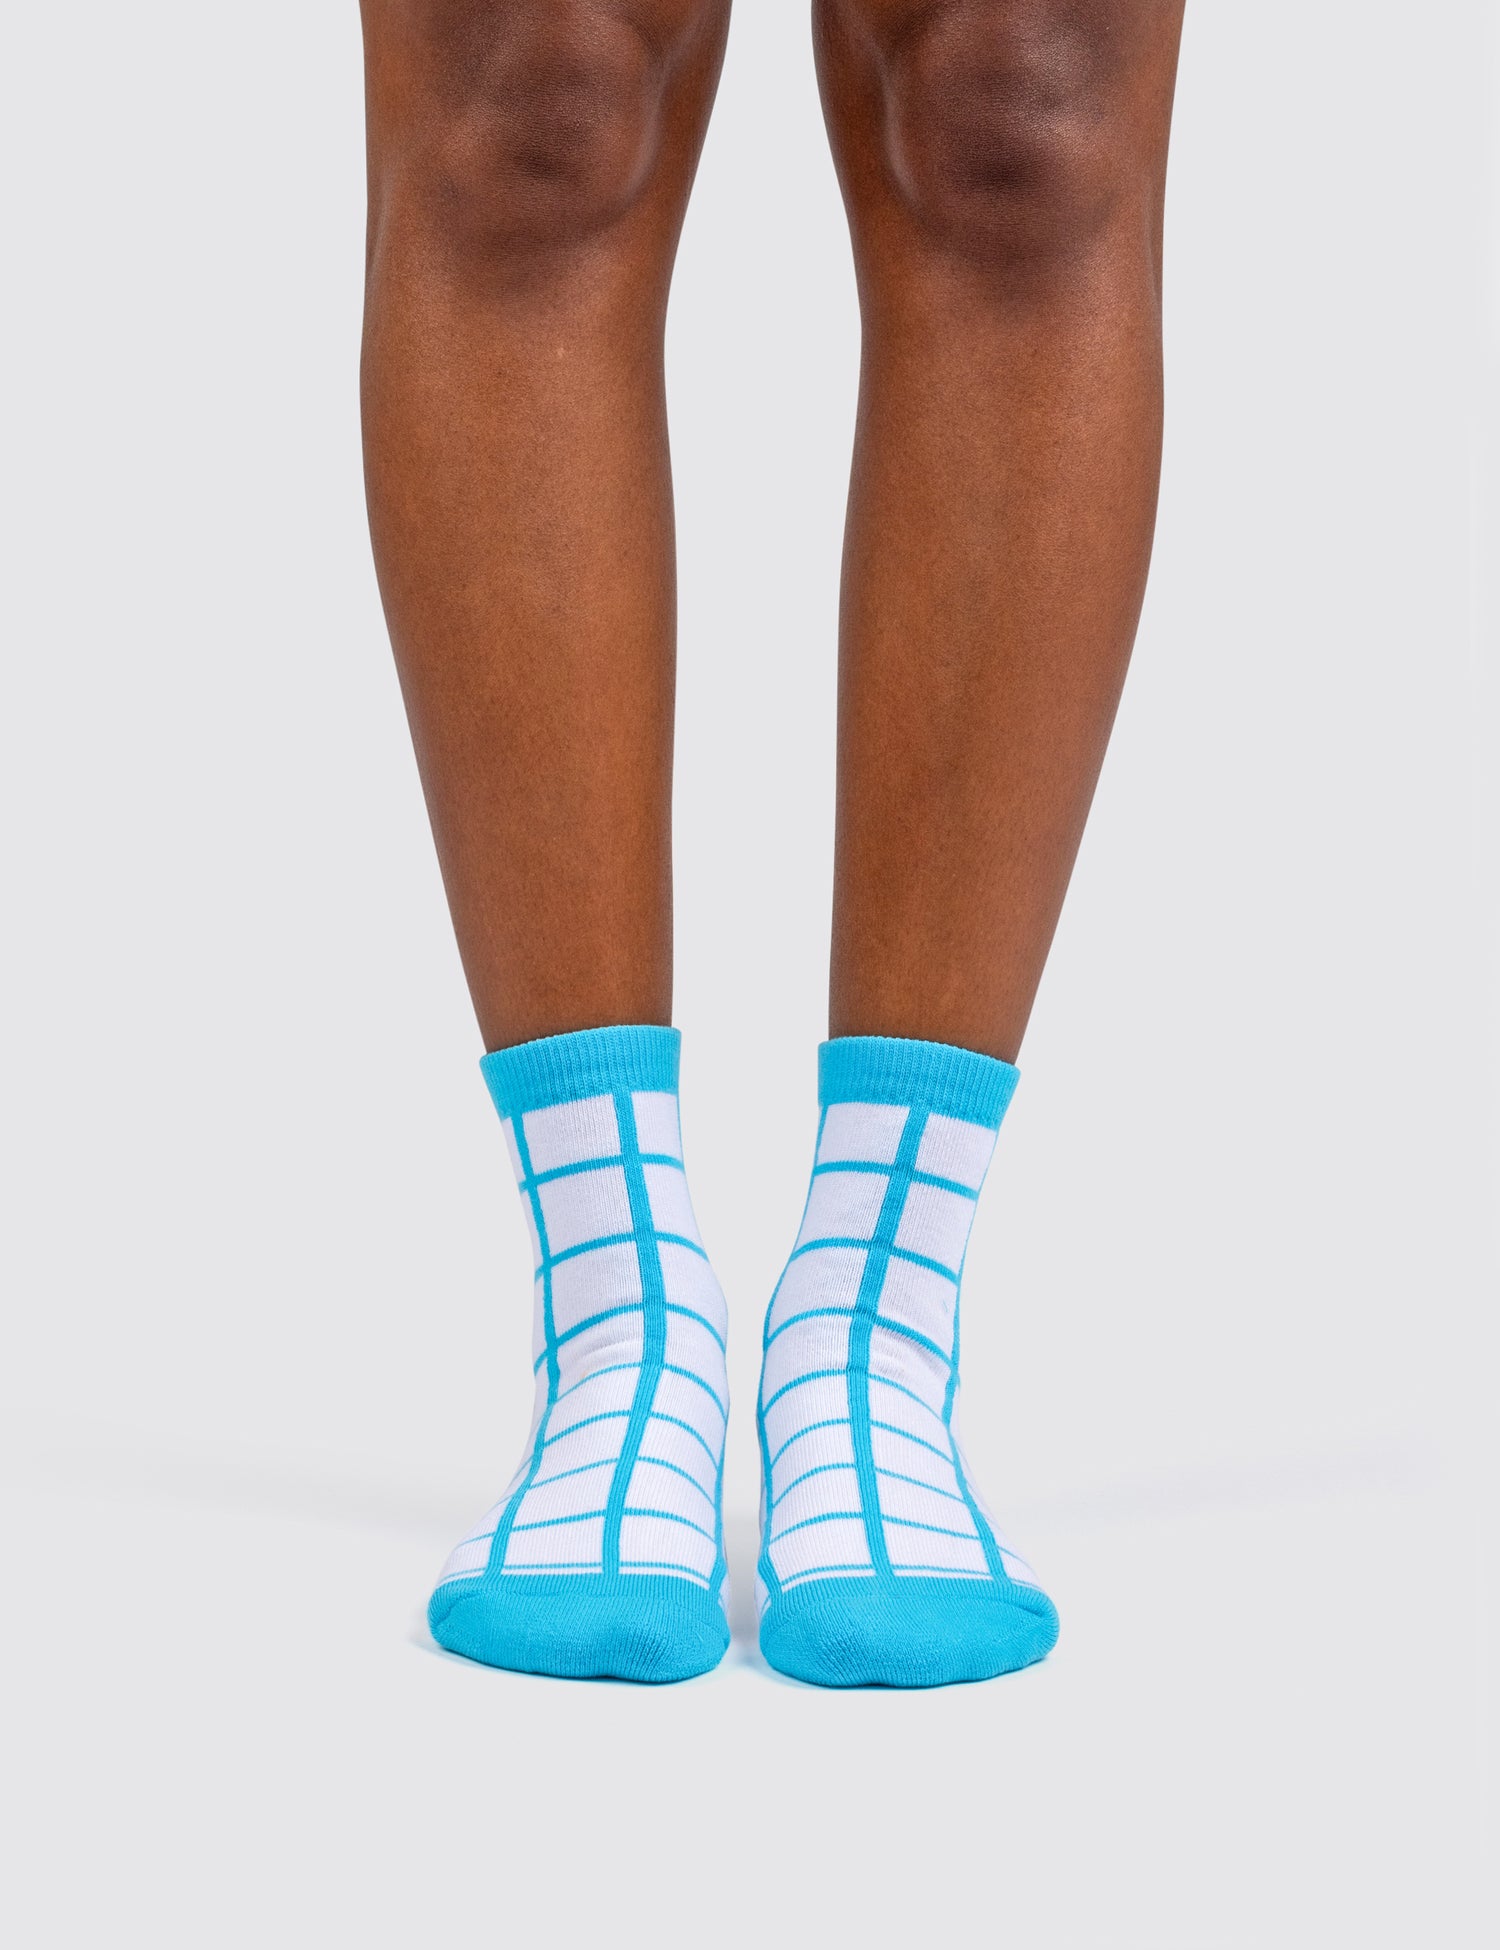 Woman's feet wearing the grid socks 